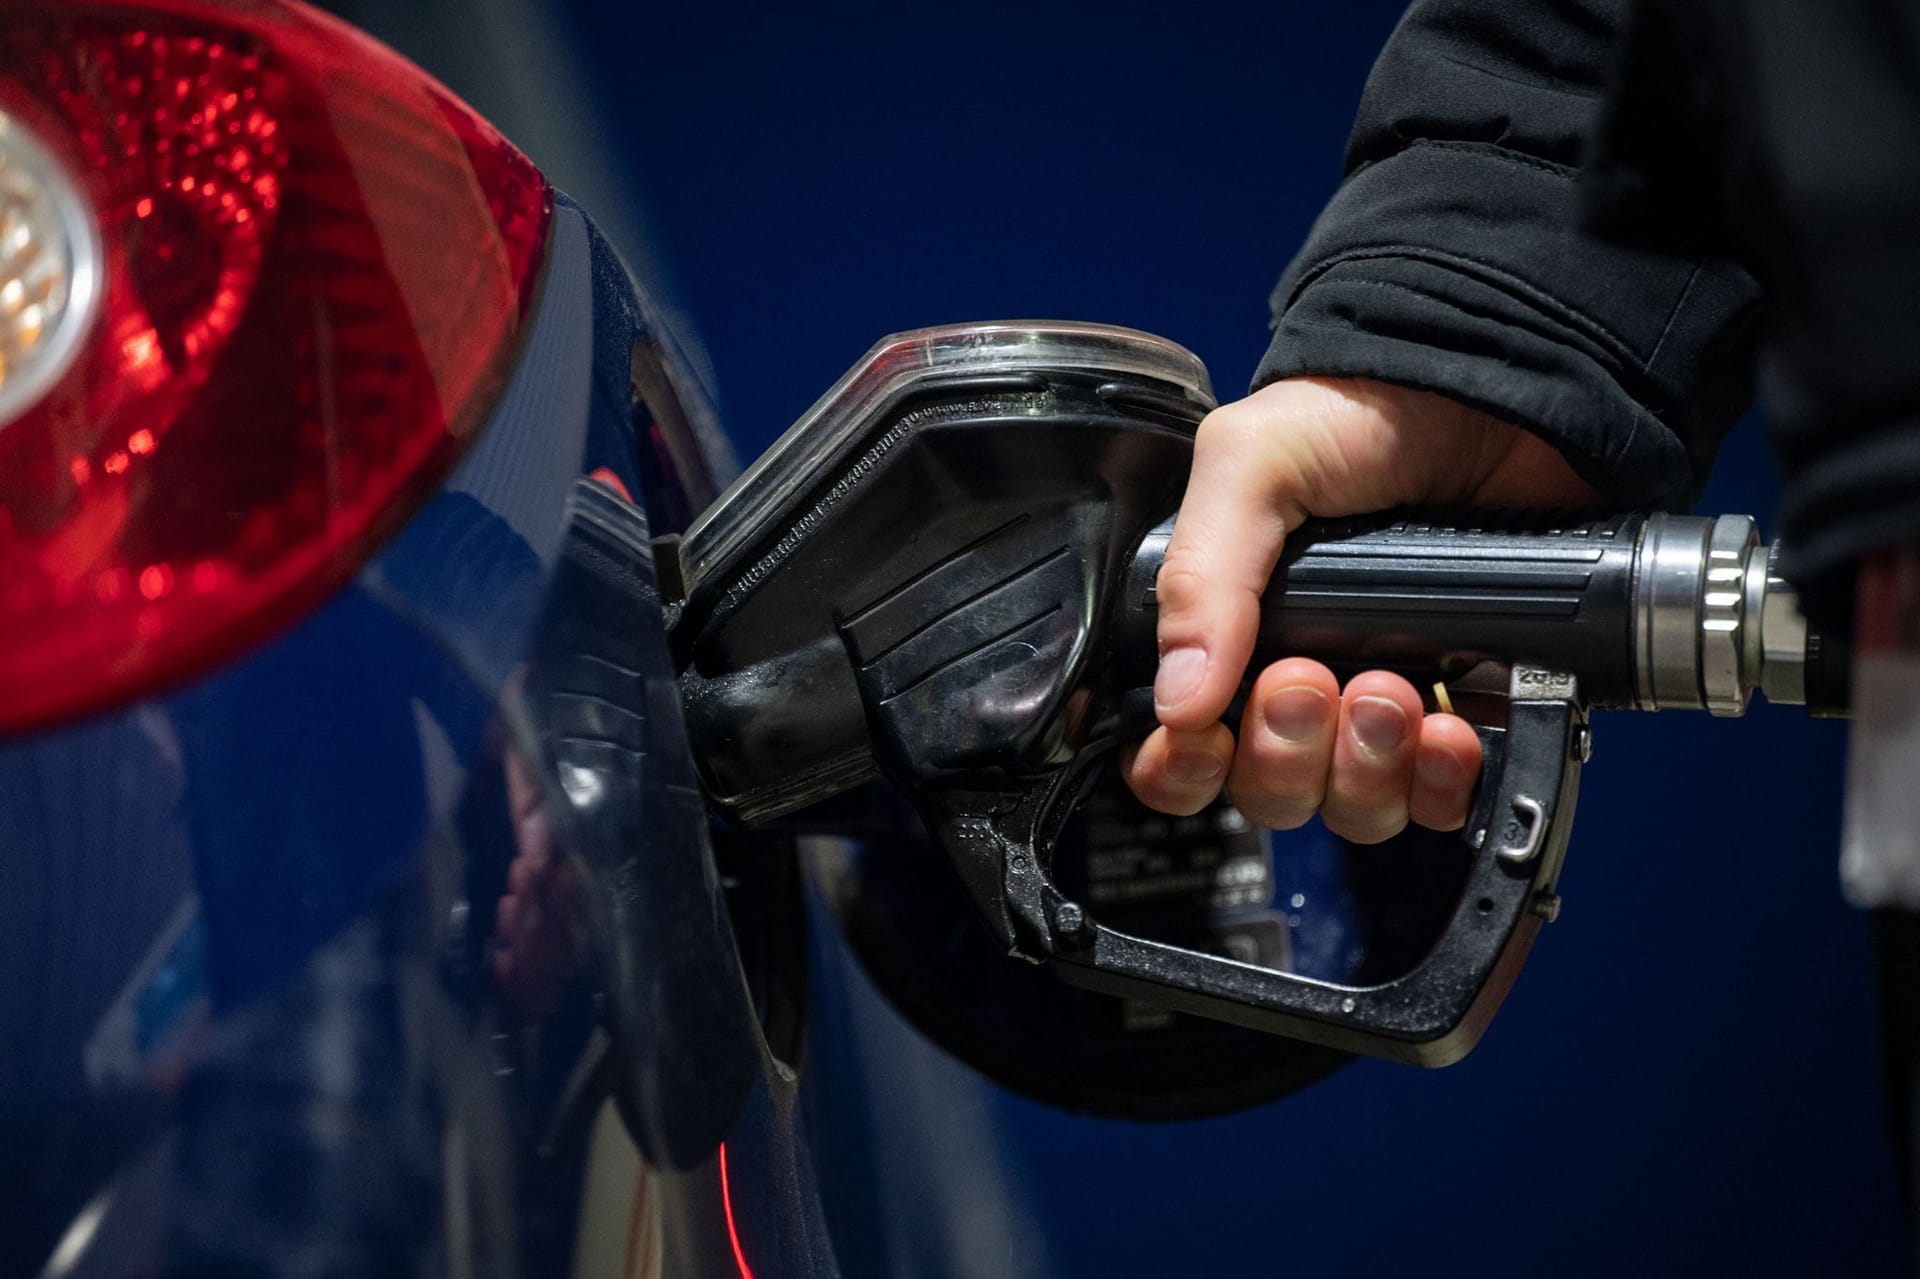 Preisschock an der Zapfsäule: Der Benzinpreis stieg in den letzten Wochen um fast neuen Cent an.